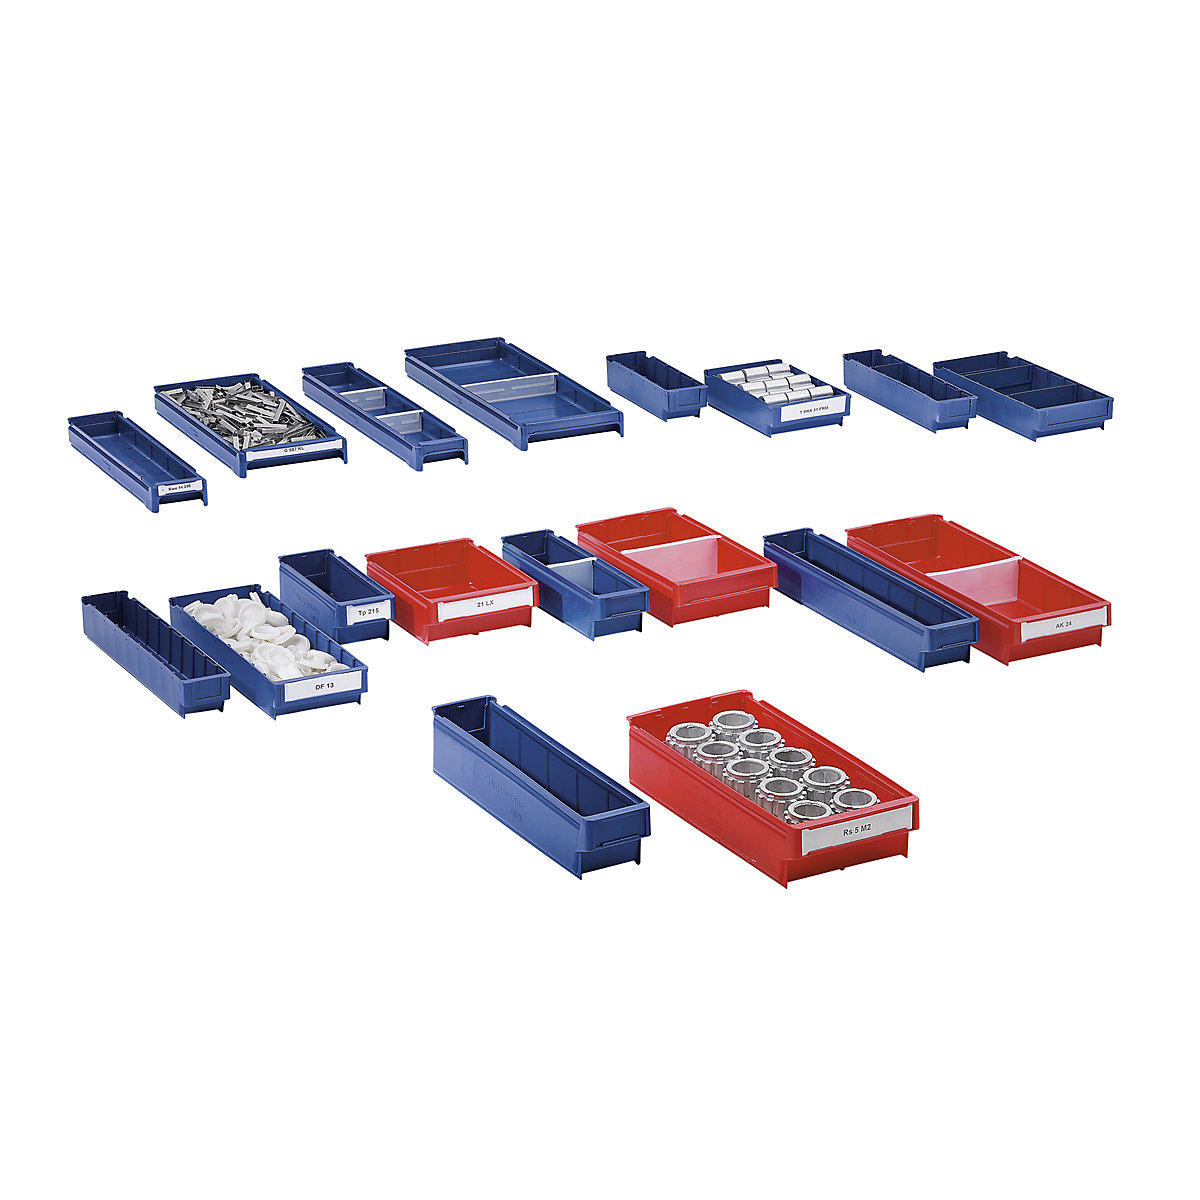 Regalkasten aus Polypropylen, blau, LxBxH 500 x 94 x 80 mm, VE 40 Stk-15